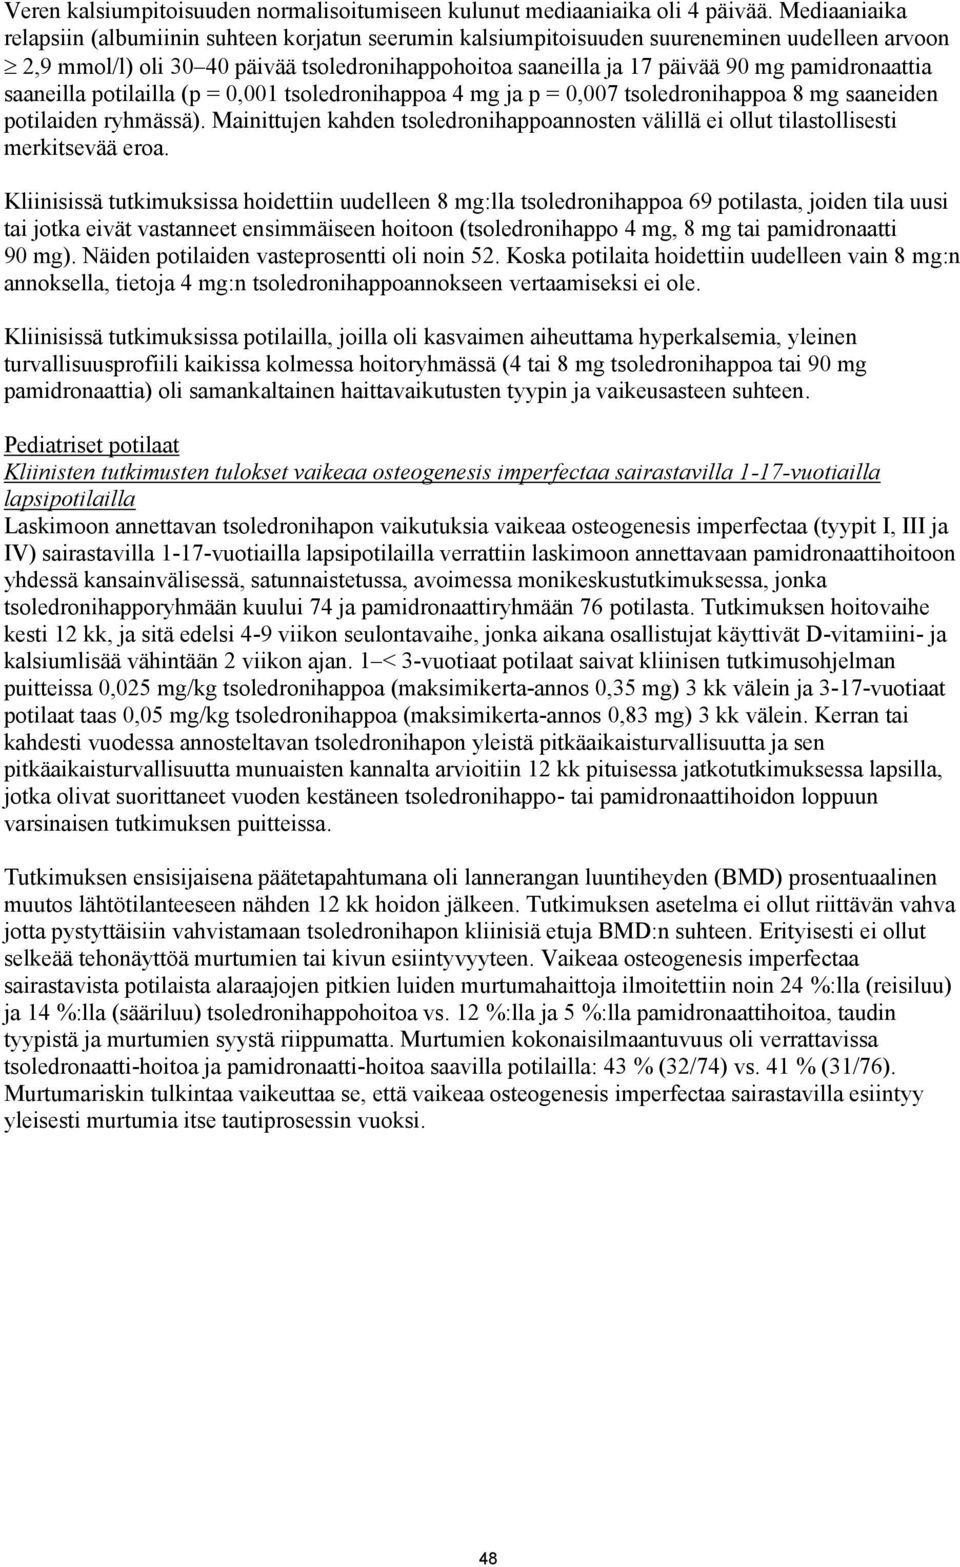 pamidronaattia saaneilla potilailla (p = 0,001 tsoledronihappoa ja p = 0,007 tsoledronihappoa 8 mg saaneiden potilaiden ryhmässä).